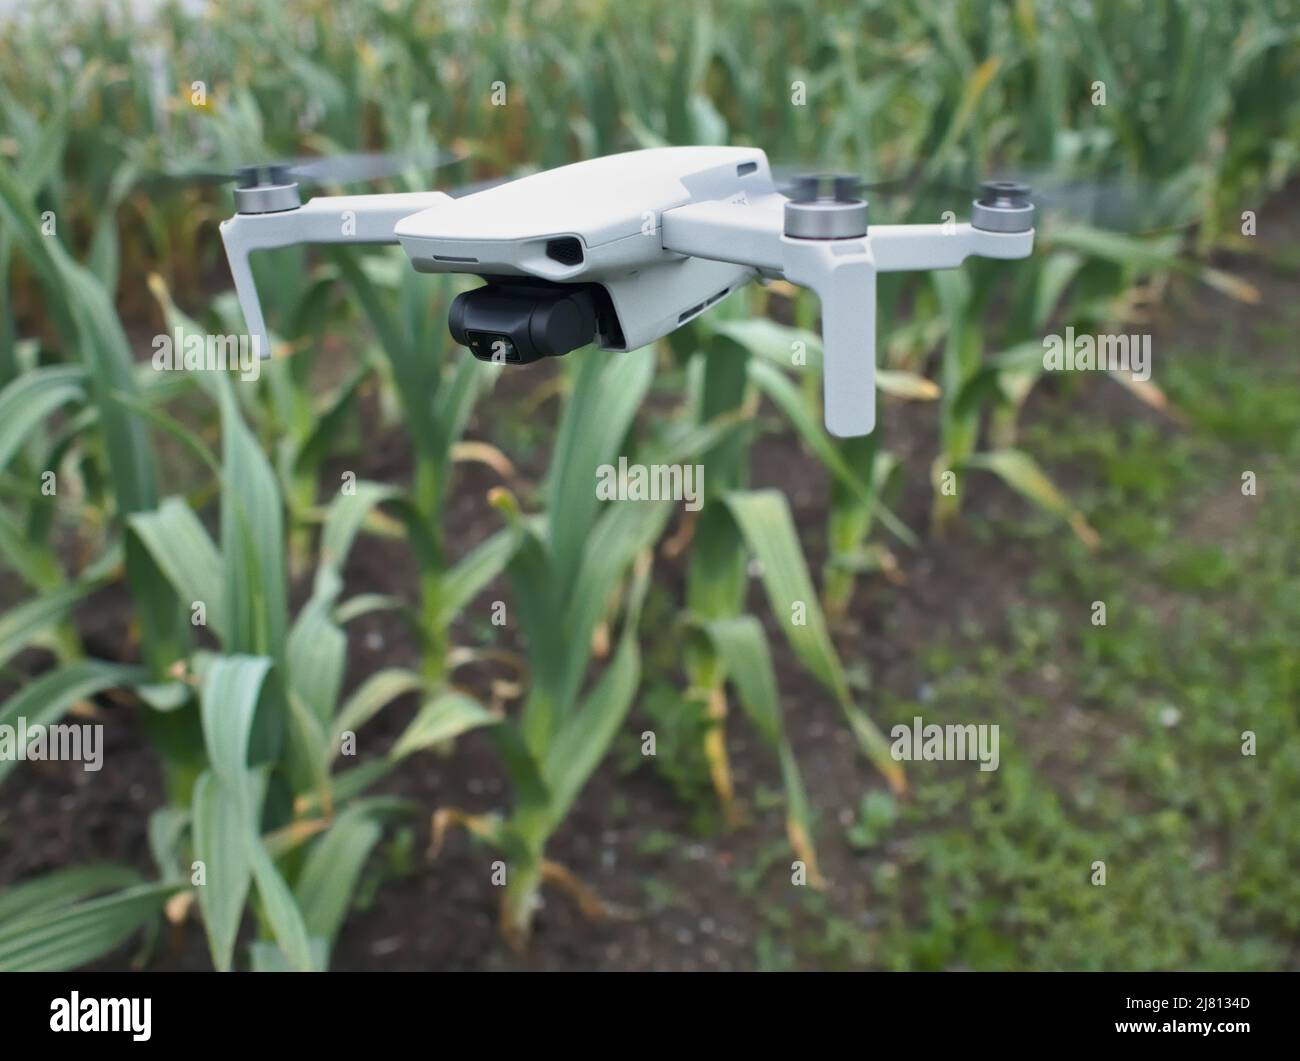 Eine kleine Drohne fliegt tief über einer Ernte von Lauch (Allium ampeloprasum var. porrum) auf einem landwirtschaftlichen Feld und veranschaulicht den Einsatz von Drohnen in der Landwirtschaft. Stockfoto